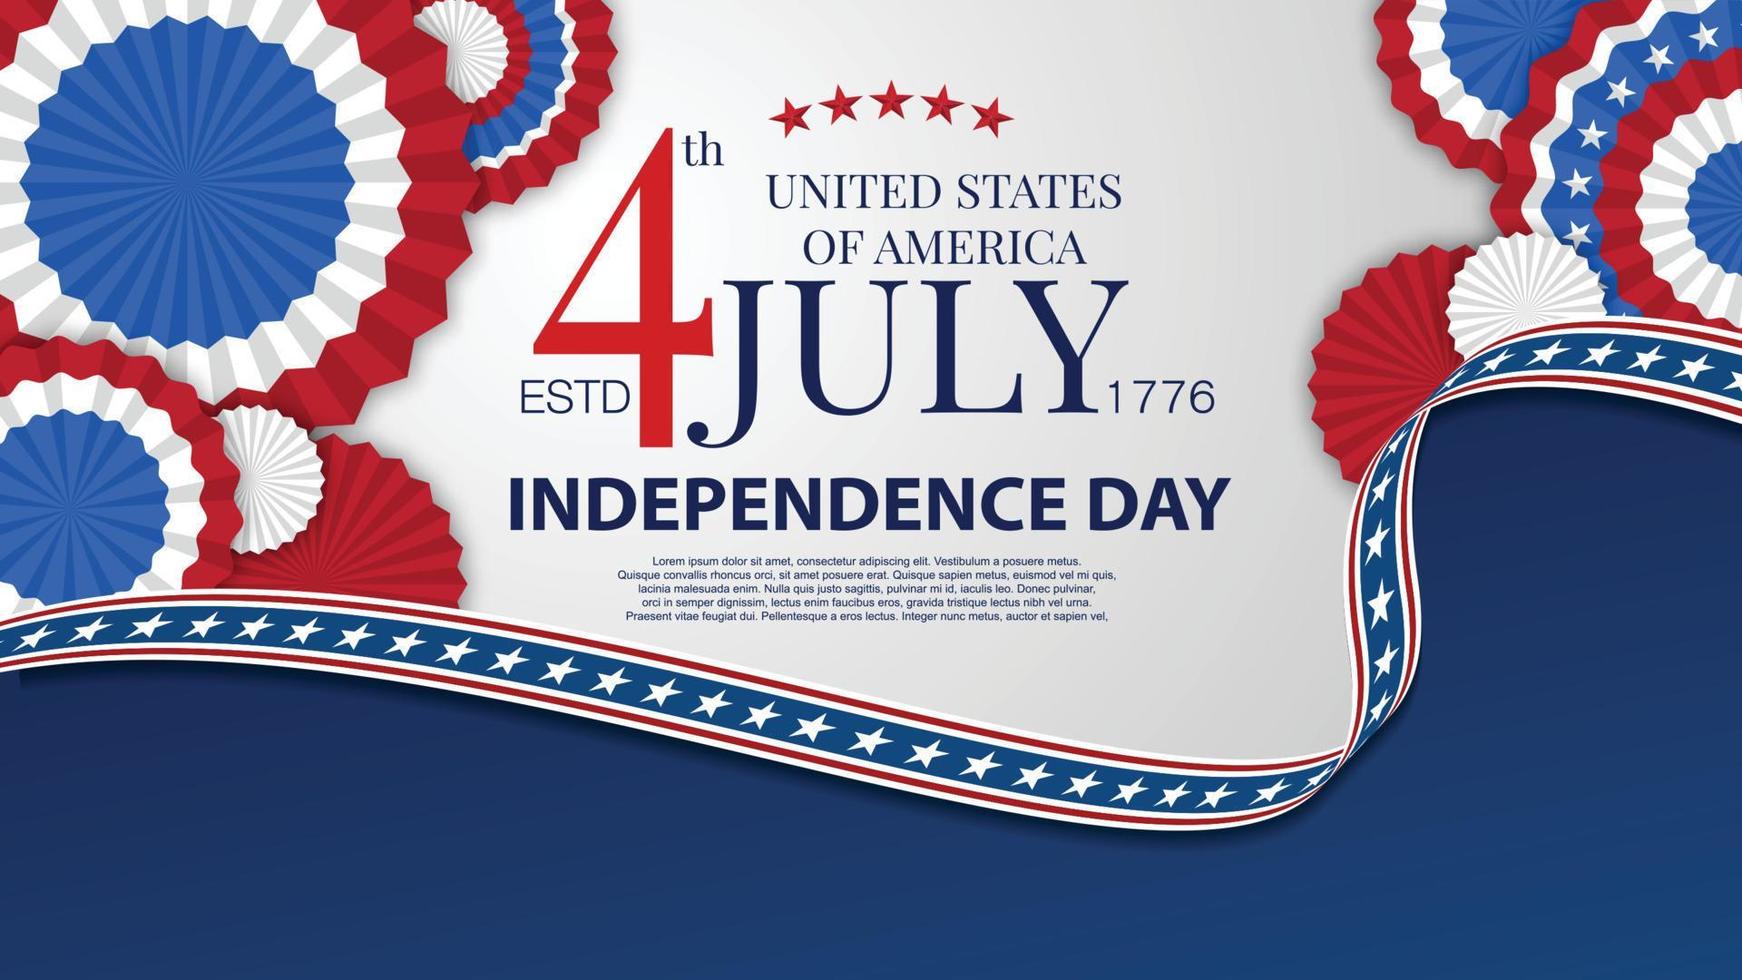 fête de l'indépendance usa drapeau américain decor.4 juillet modèle d'affiche de célébration.illustration vectorielle. vecteur